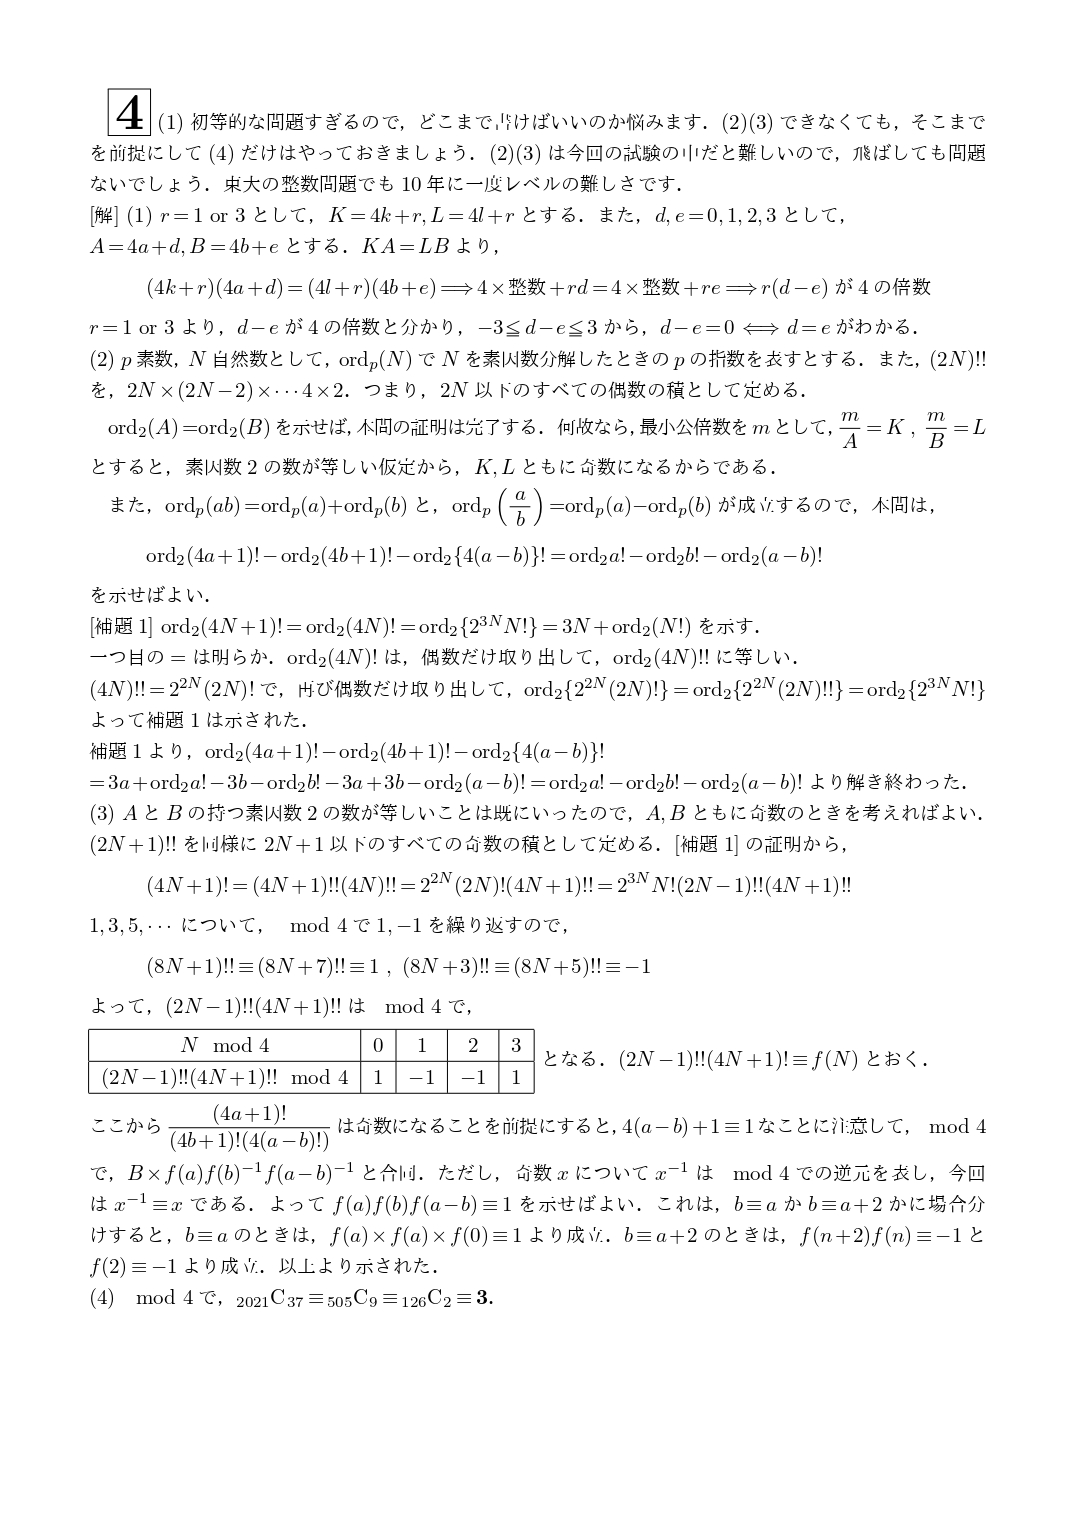 2021年2月19日 東京大学(理系)数学 解答速報